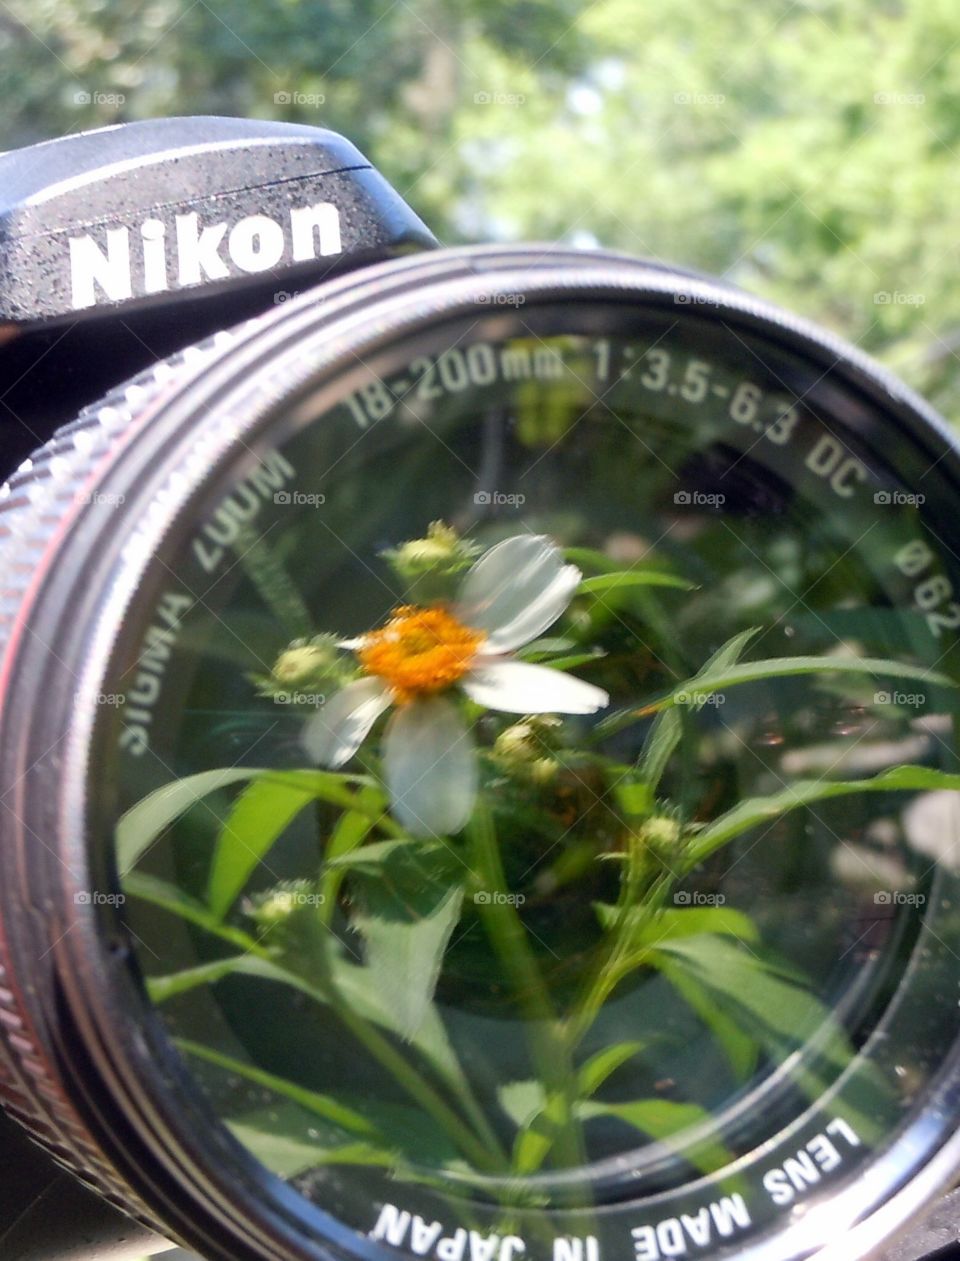 Garden in camera lens